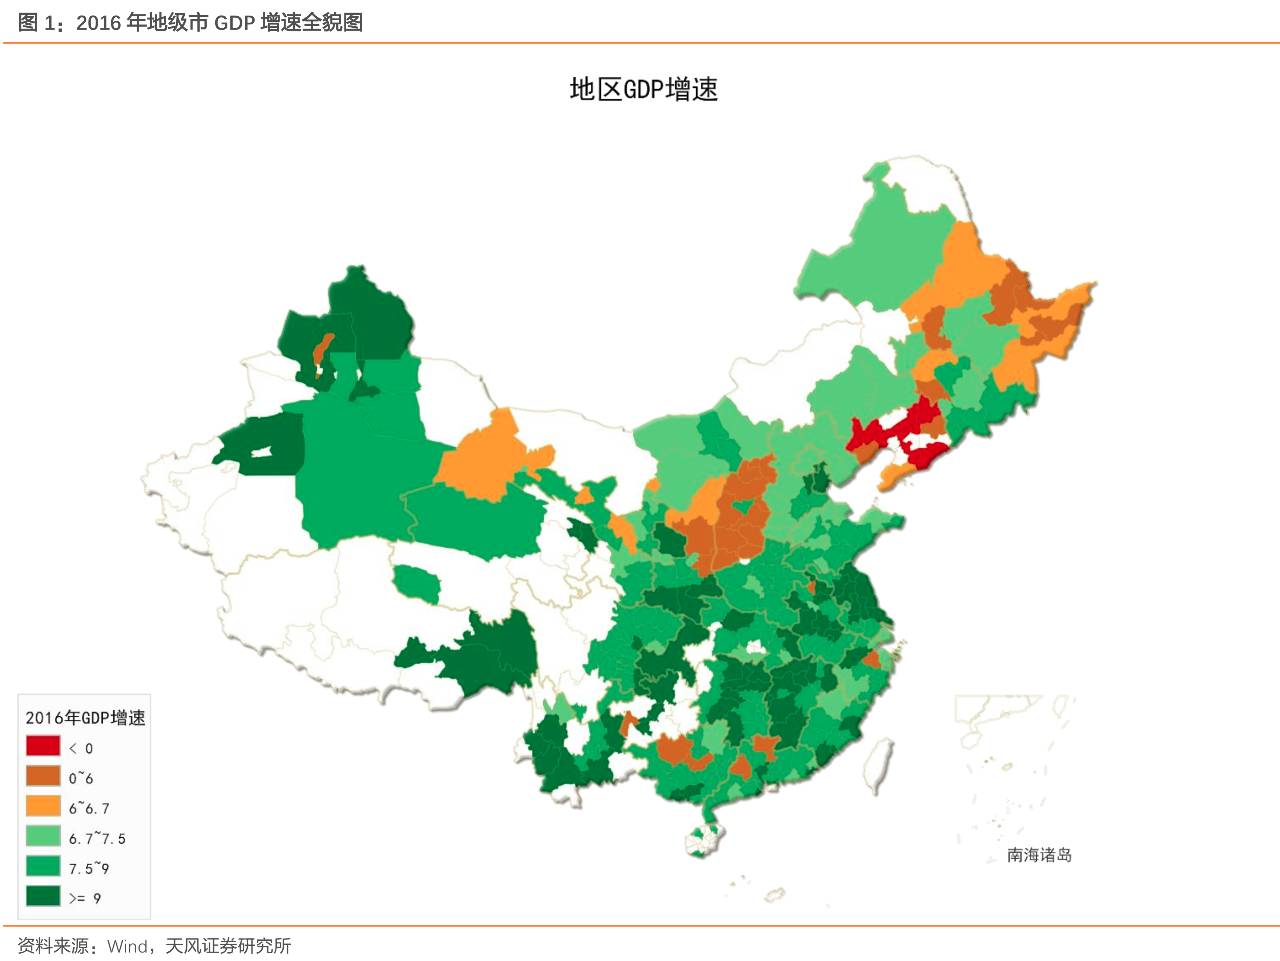 共涉及18个省份,其中广东省最多有8个地级市,其次是山西(7个),江苏(6